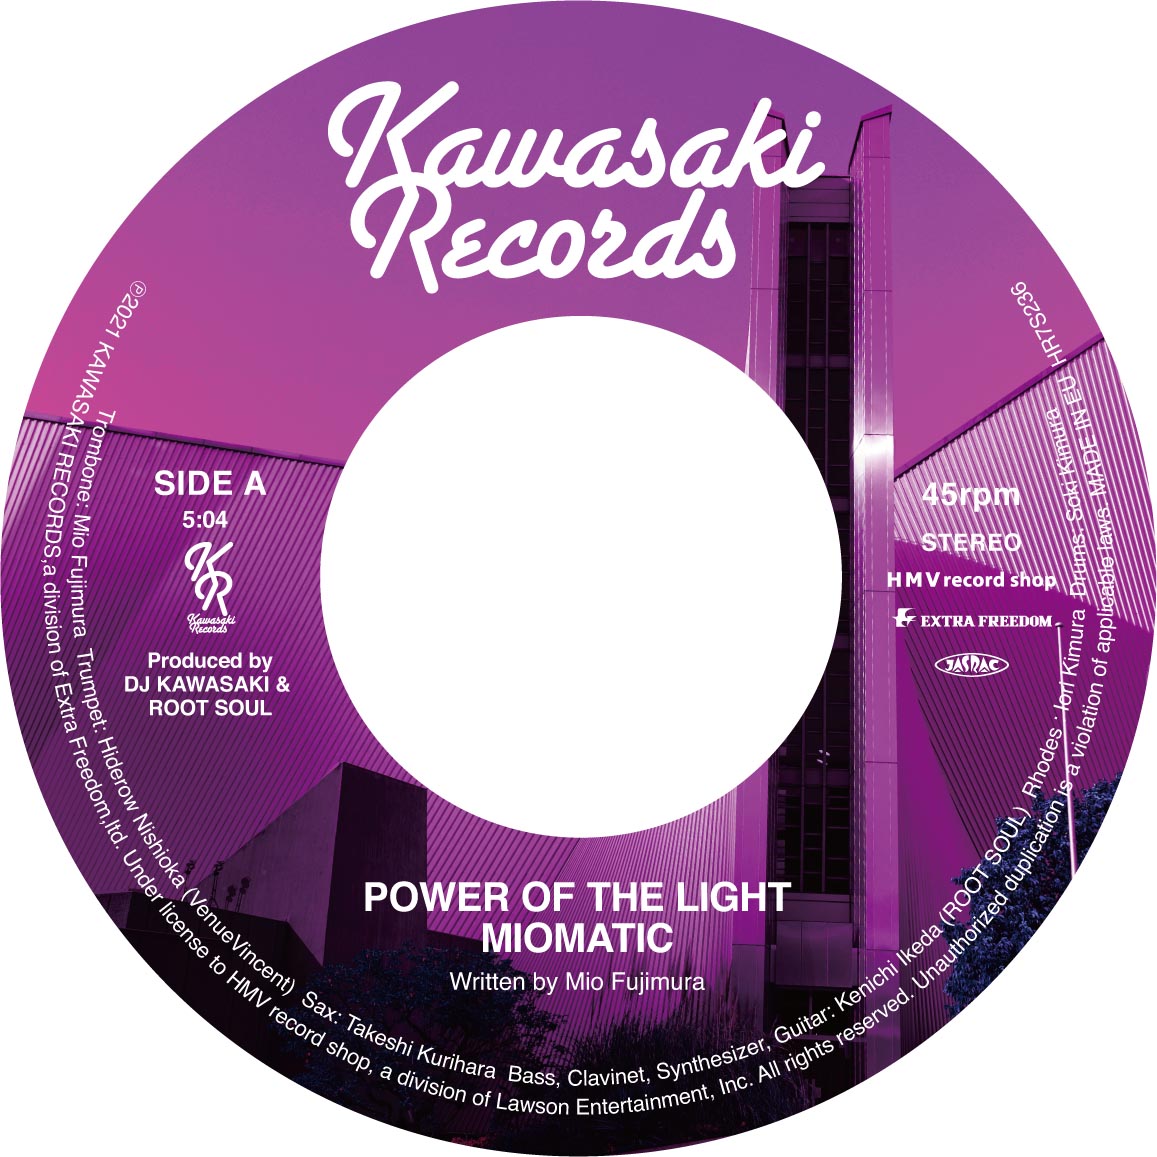 2021.11/27のレコードの日に、KAWASAKI RECORDSより2タイトル同時発売 